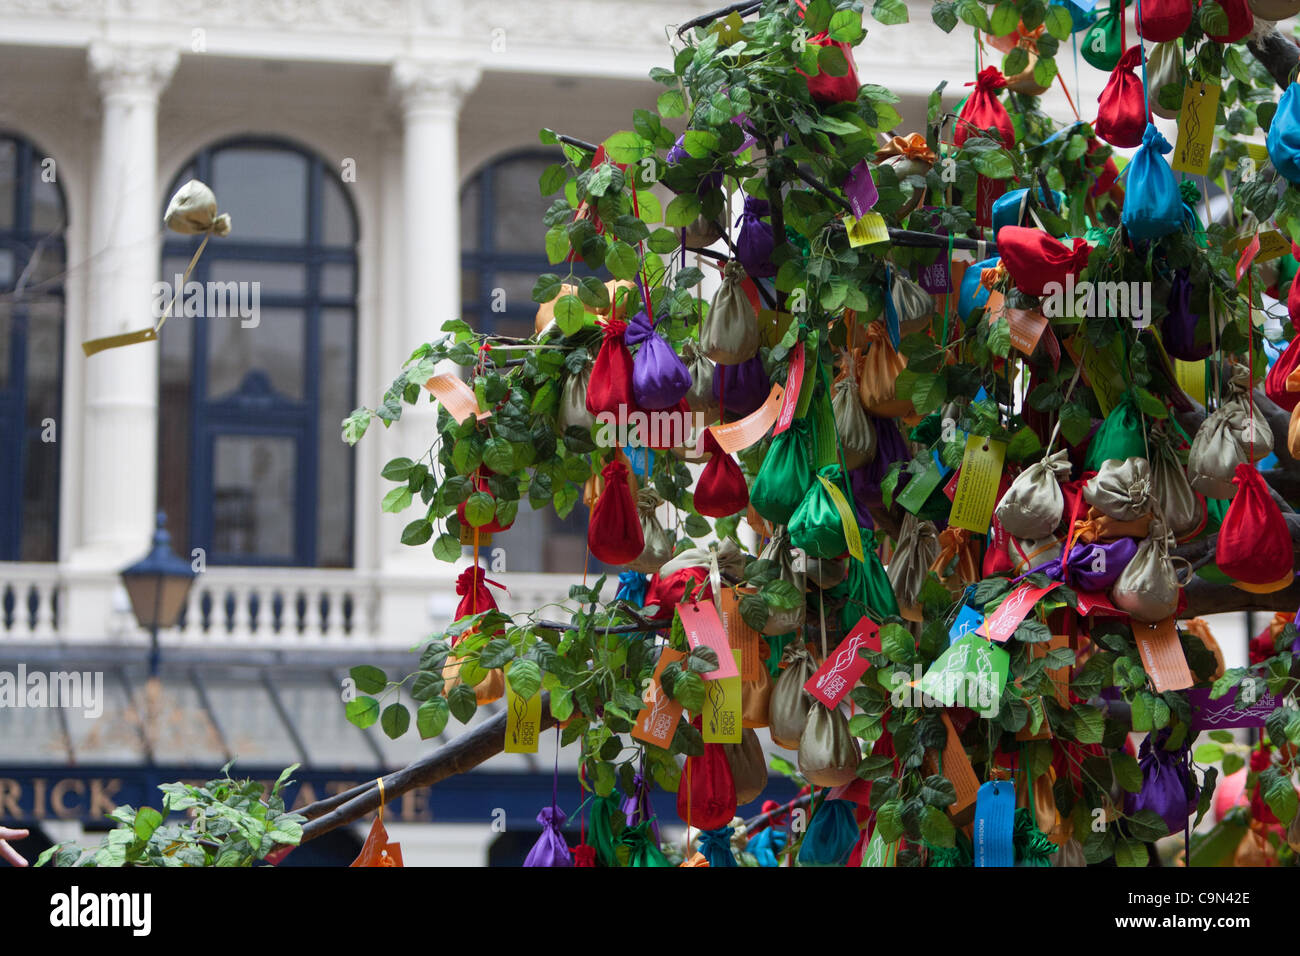 Einer von Hunderten von Taschen tragen einen Wunsch fliegt durch die Luft in Richtung der Wishing Tree während der Feierlichkeiten zum chinesischen Neujahr, das Jahr des Drachen, Chinatown. Stockfoto